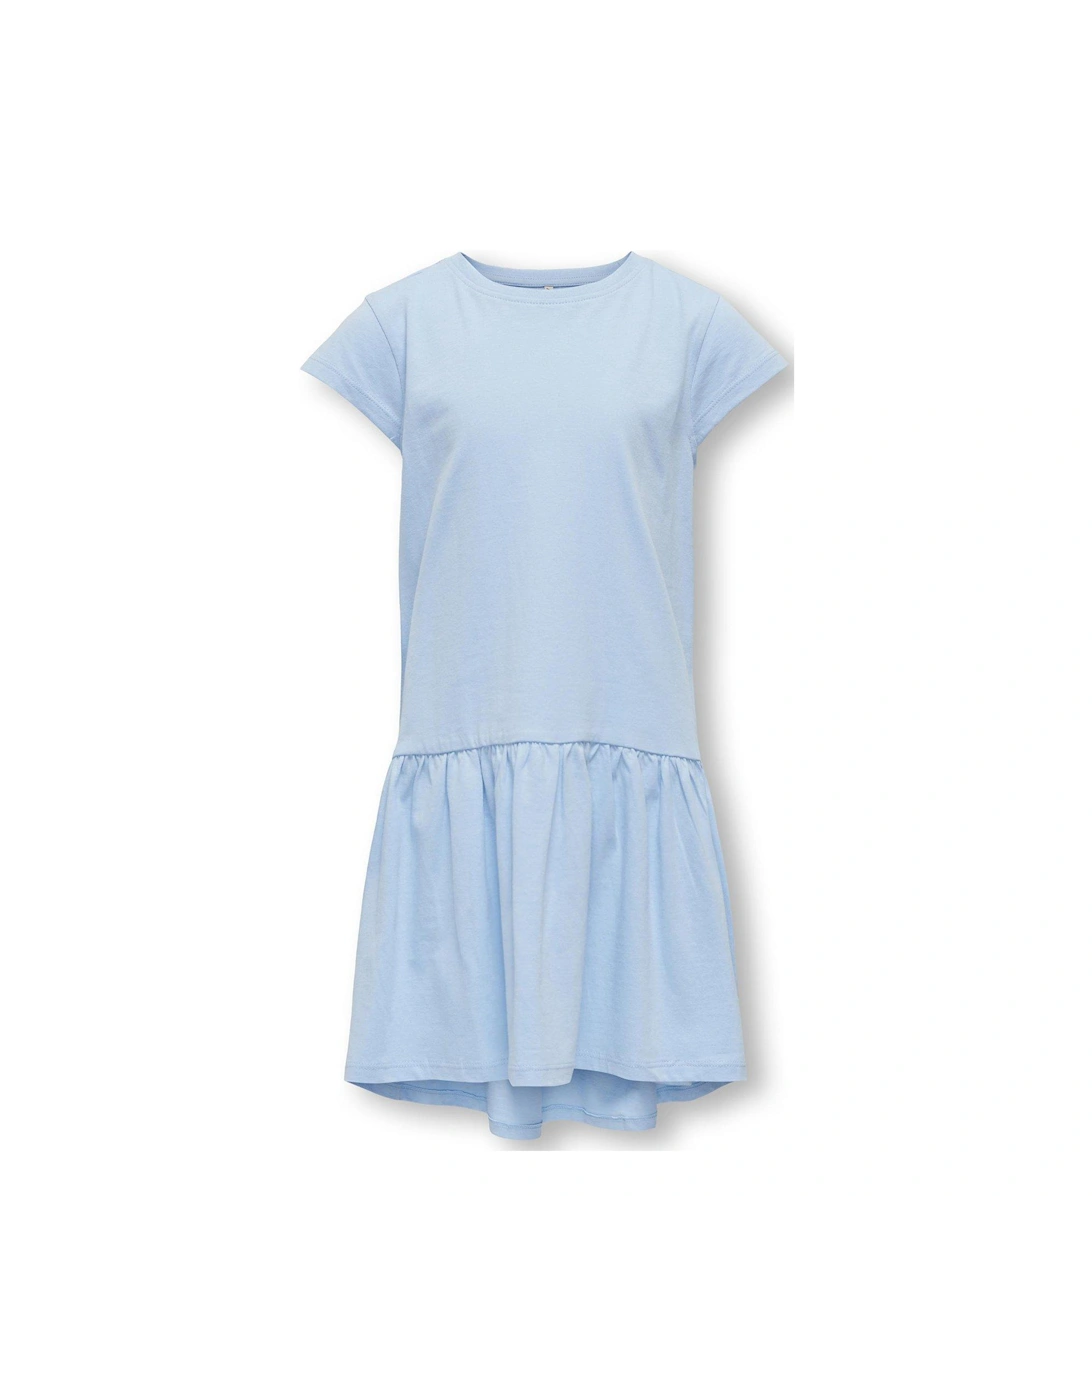 Girls Short Sleeve Jersey Dress - Light Blue, 3 of 2